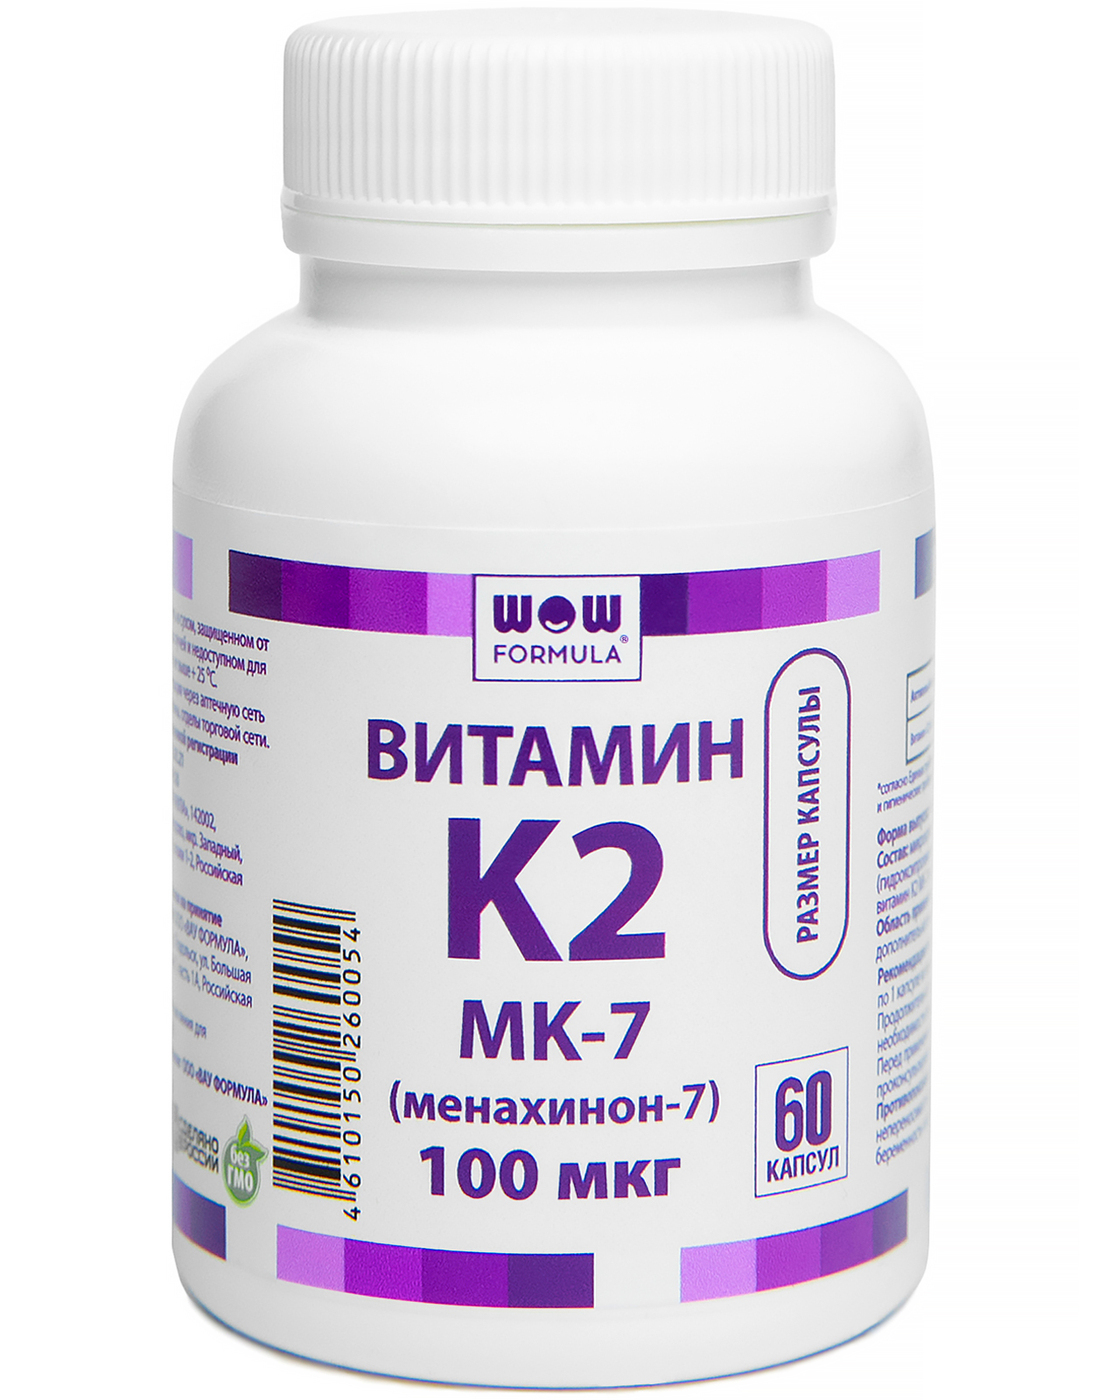 Витамин д3 ме в мкг. Витамин к2 мк7. Витамины к2 менахотин 7. К 2 МК - 7 100 мкг. Витамин д 3 + витамин к2 ( МК 7).